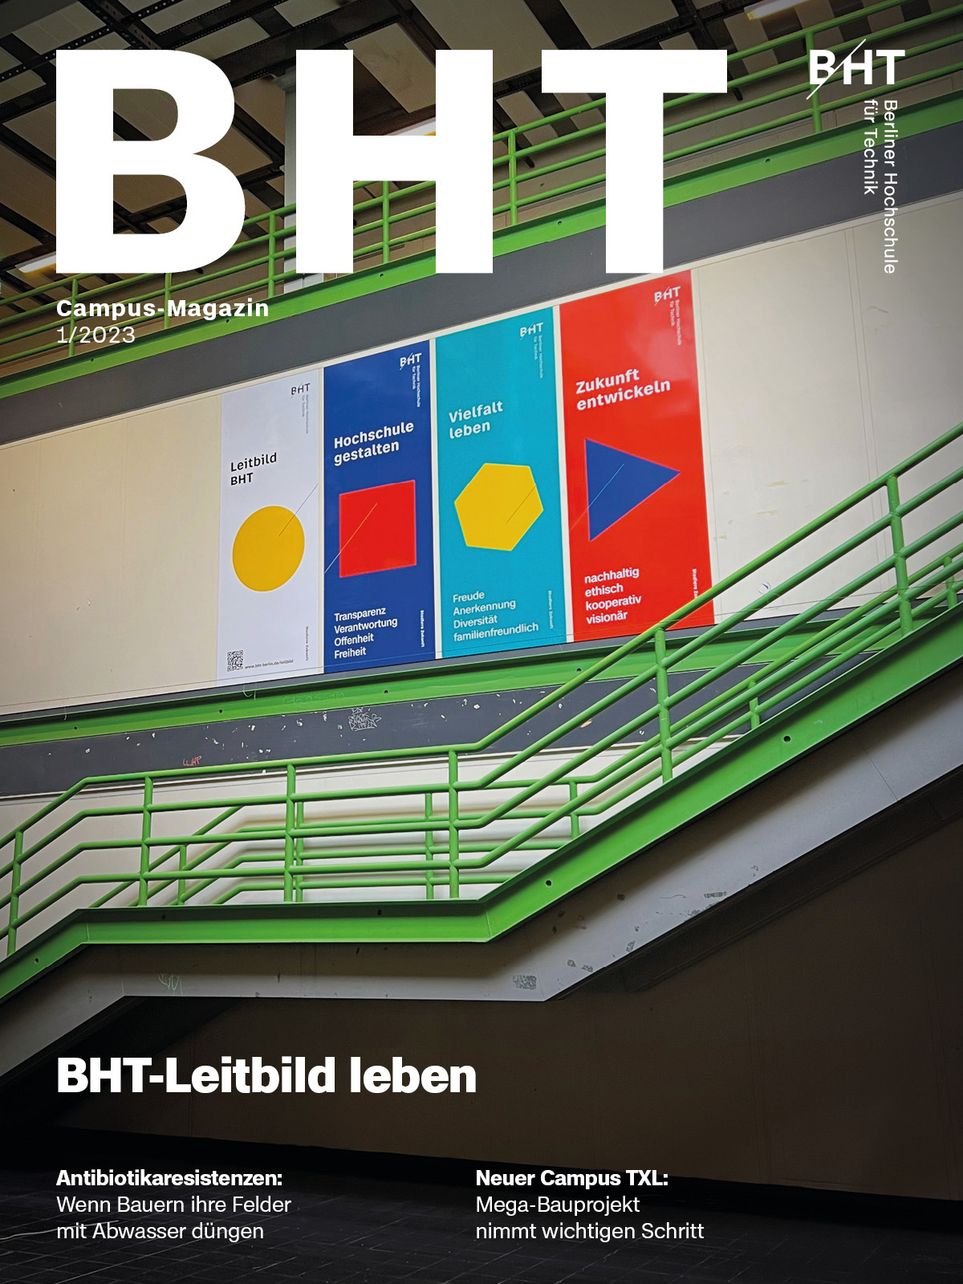 Abbildung BHT Campus-Magazin